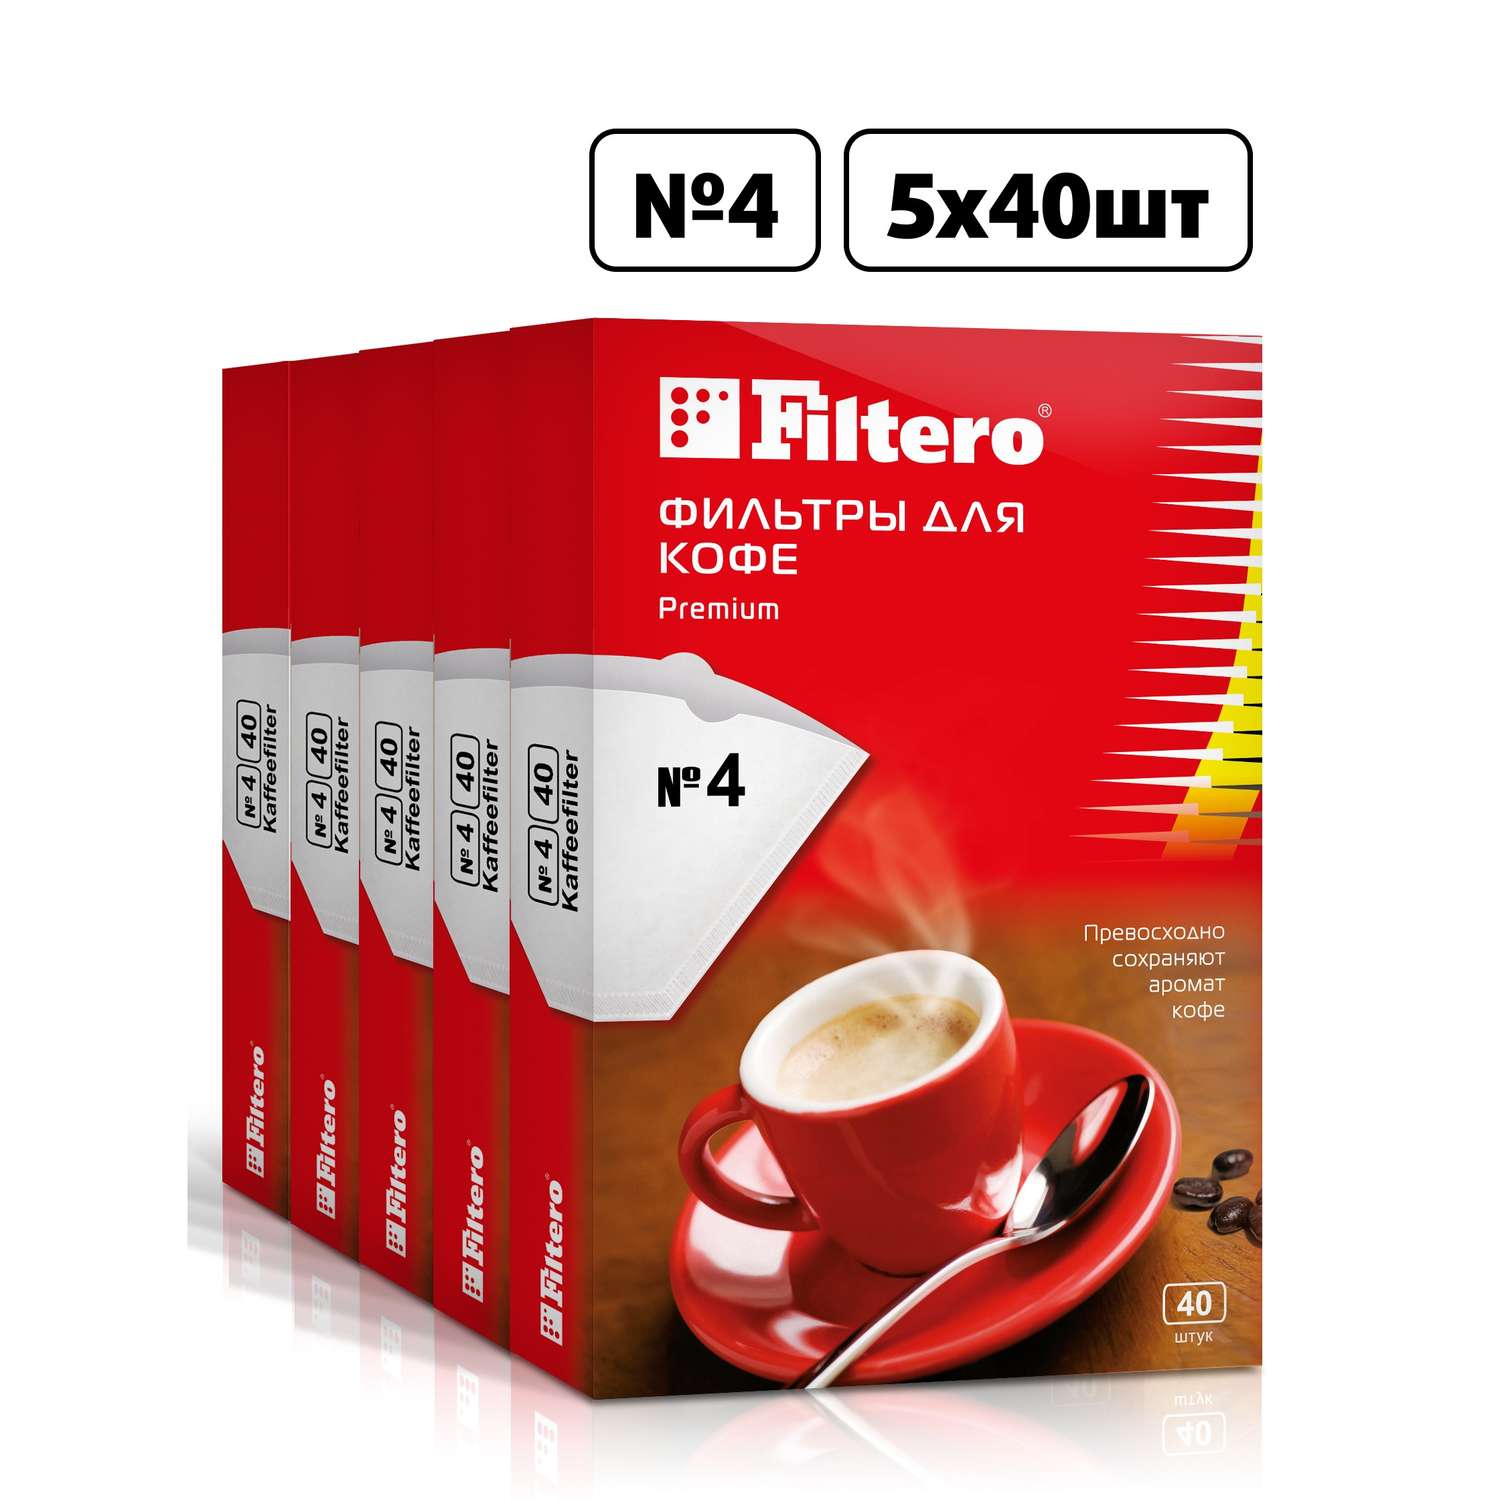 Комплект фильтров Filtero для кофеварки №4/200шт белые Premium - фото 1